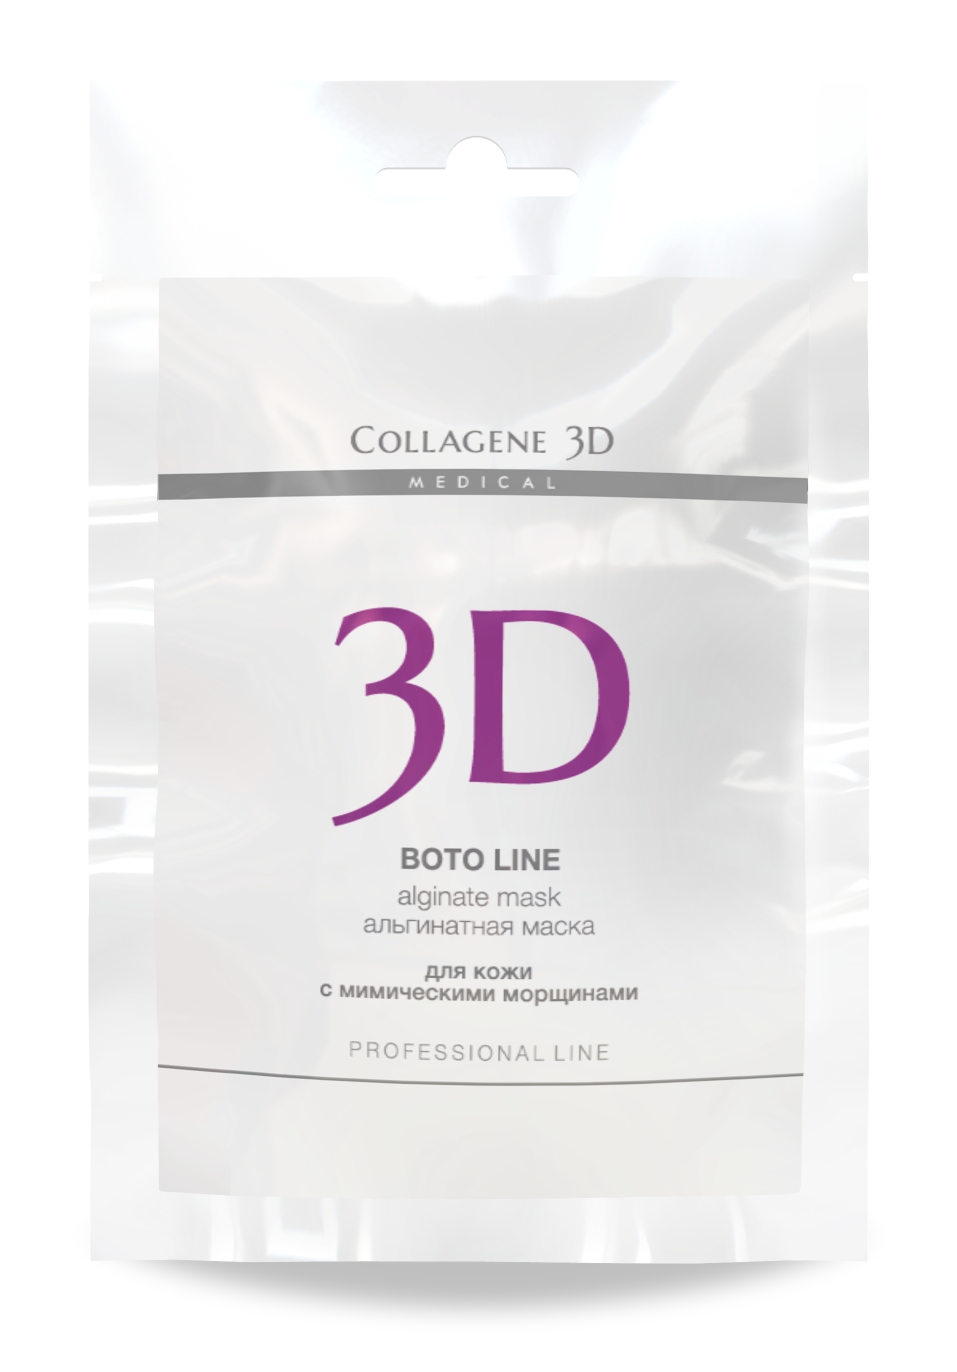 MEDICAL COLLAGENE 3D Маска альгинатная с аргирелином для лица и тела / Boto Line 30 г